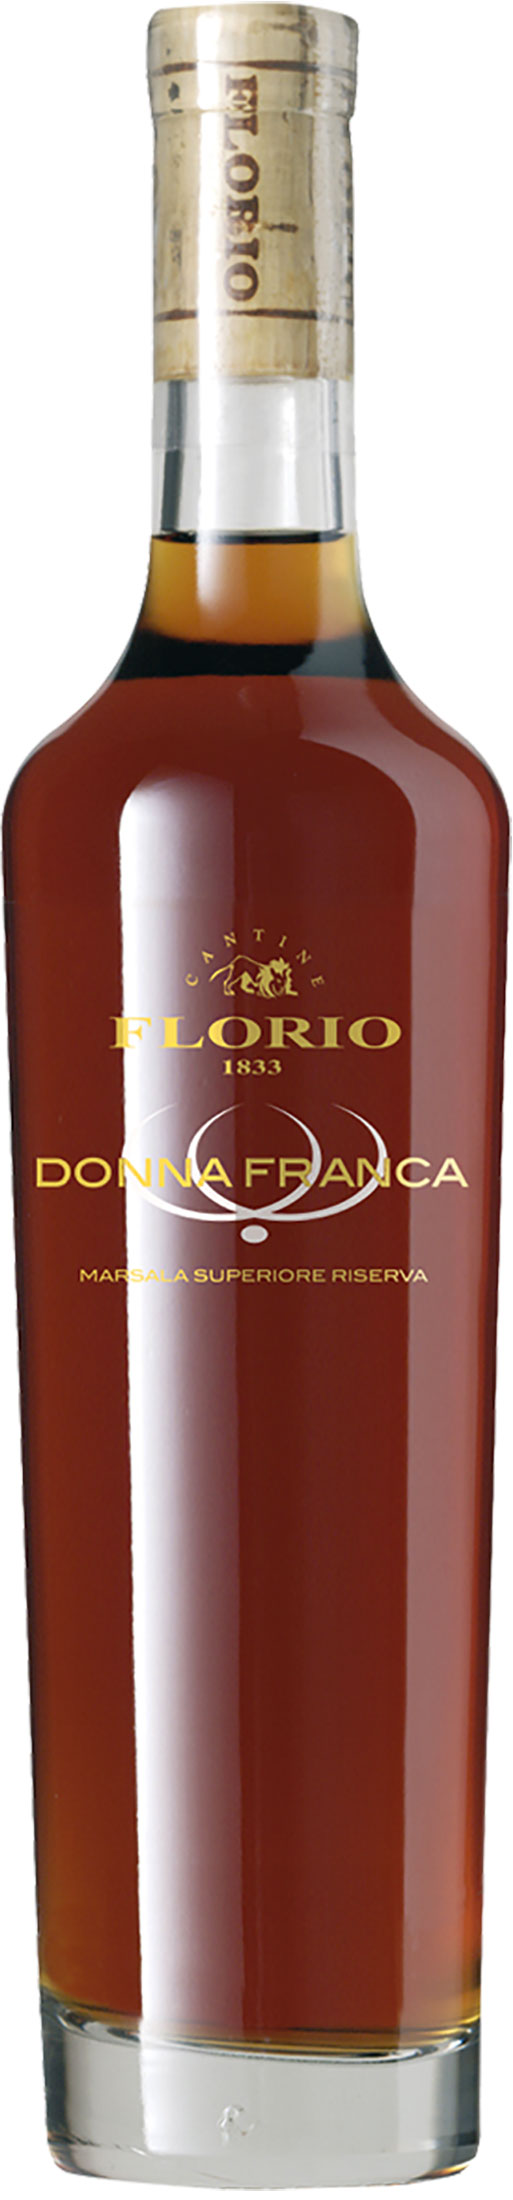 Florio Marsala Semisecco Ambra Donna Franca Riserva 0.5L